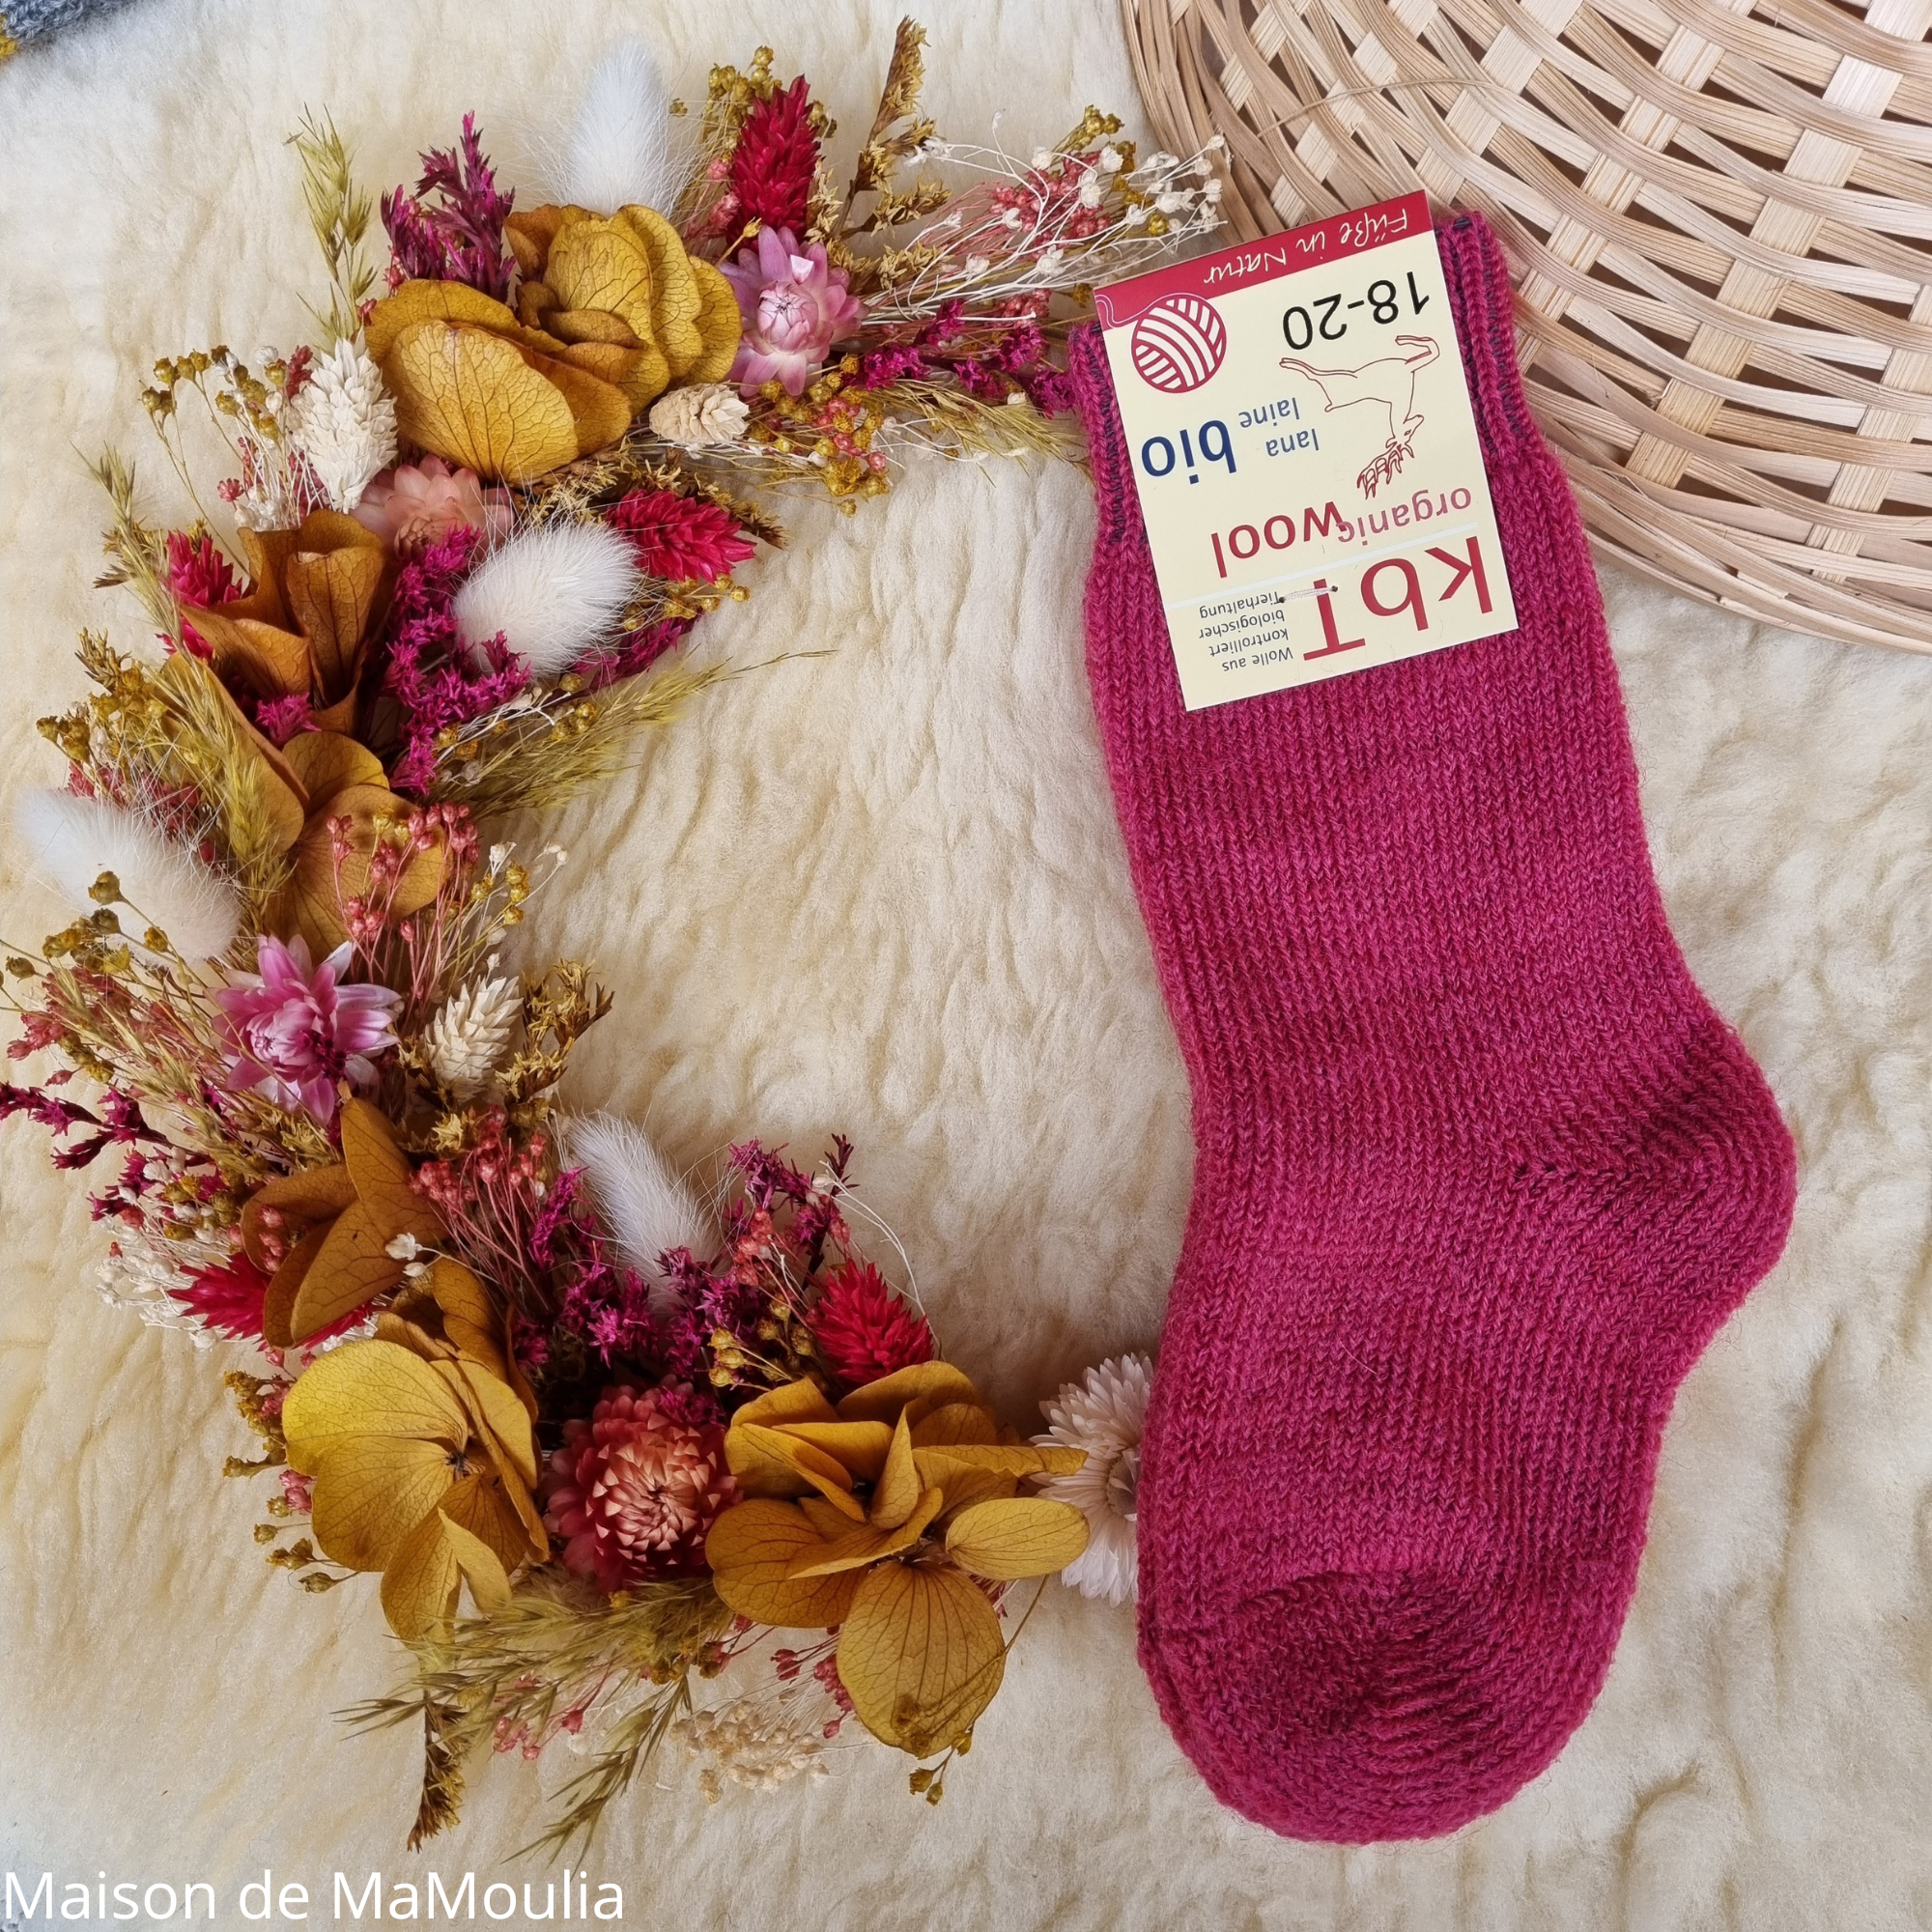 10-chaussettes-chaudes-pure-laine-bio-ecologique-hirsch-natur-bebe-enfant-maison-de-mamoulia-tres-epaisses-rose